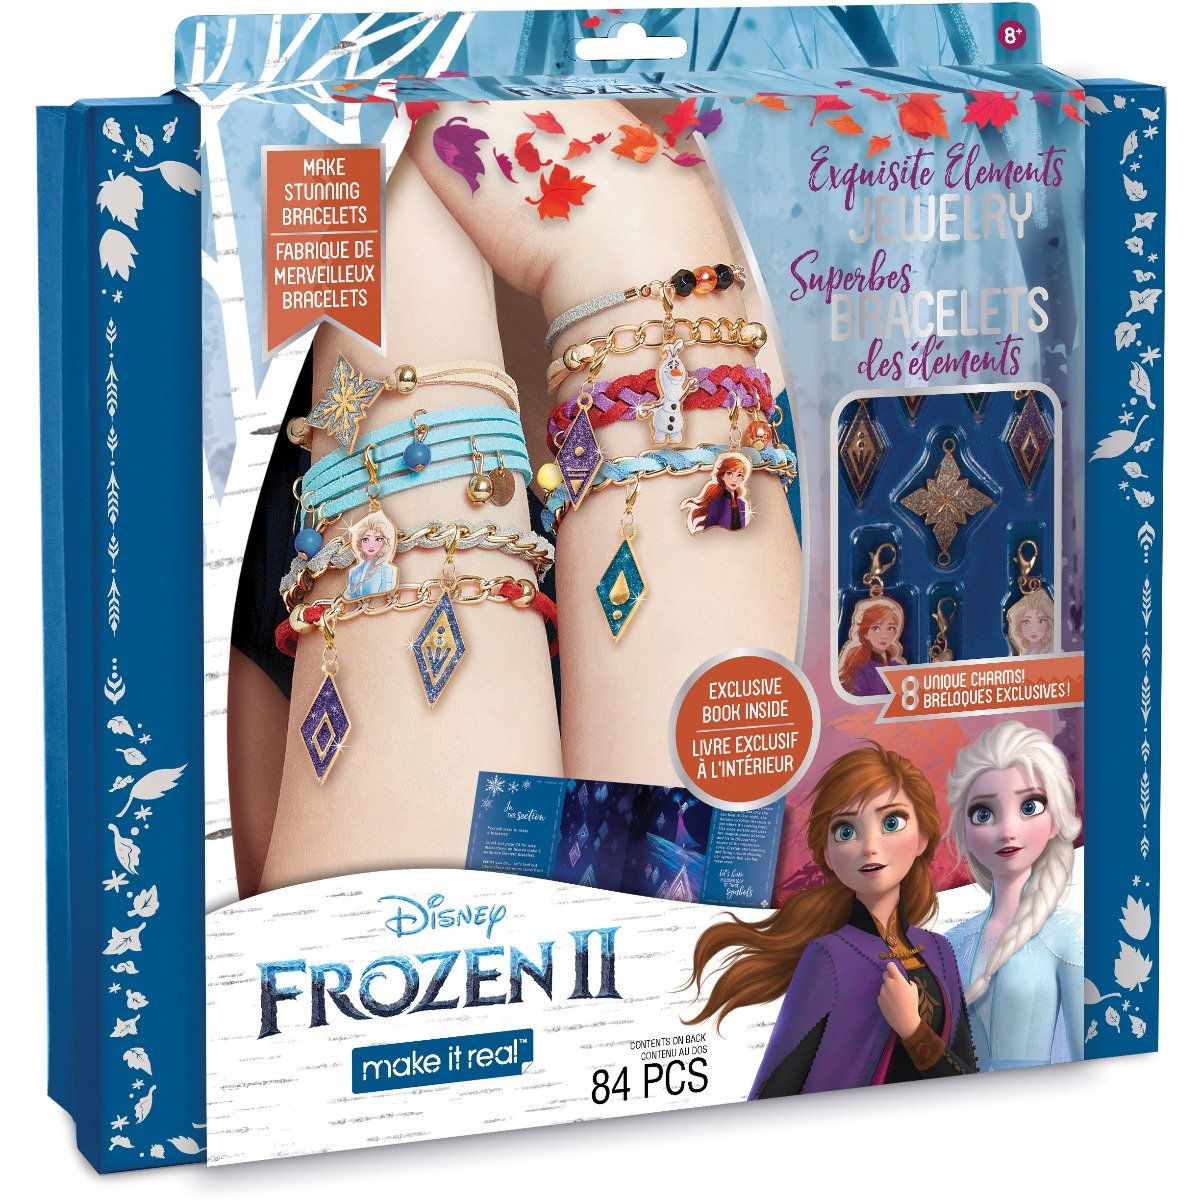 Set de creatie Make It Real Disney Frozen 2, Bratari rafinate Make It Real imagine noua responsabilitatesociala.ro